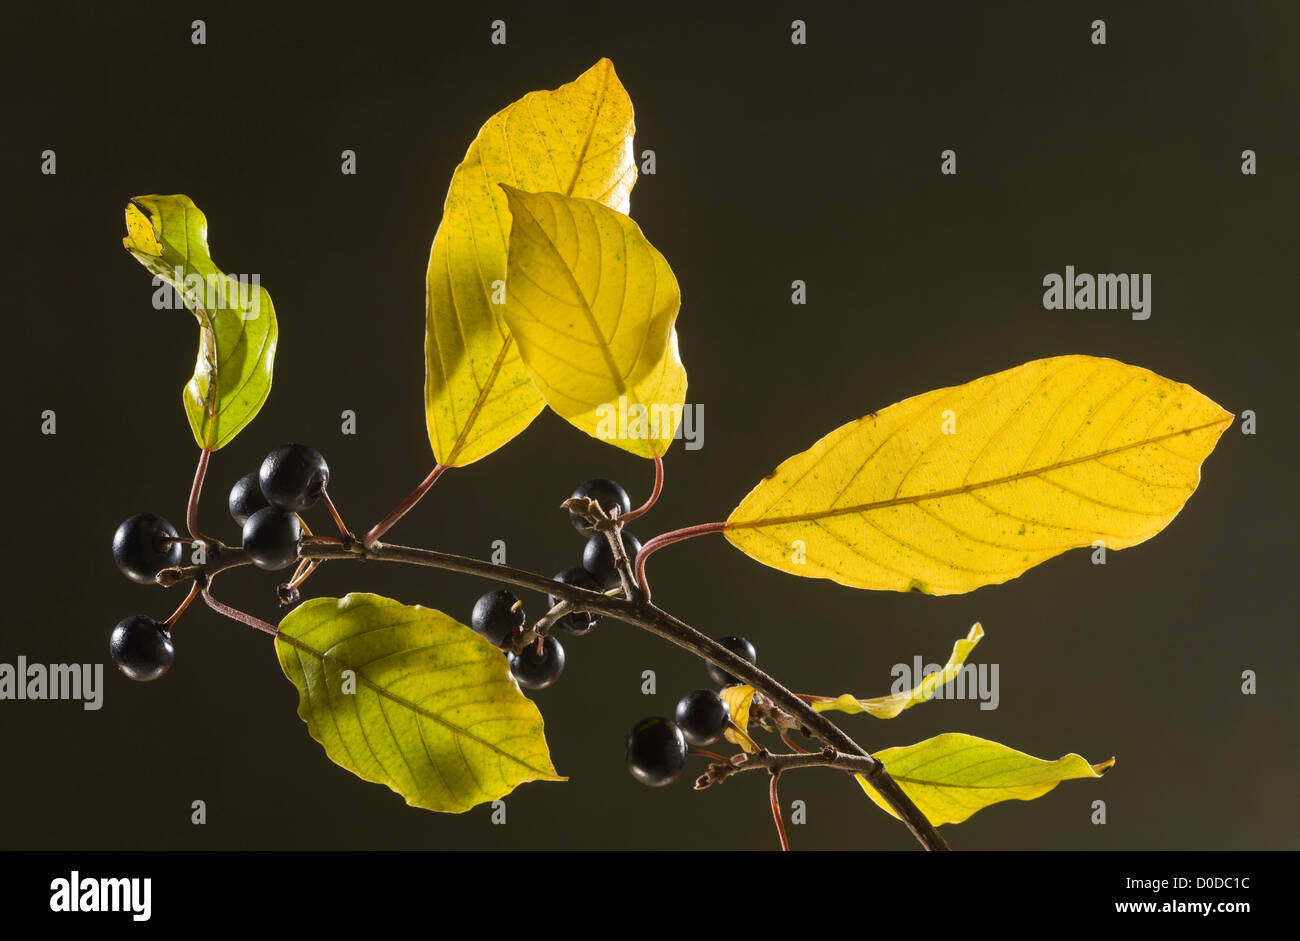 Alder Buckthorn, Frangula alnus in autumn, leaves and berries. Dorset. Stock Photo